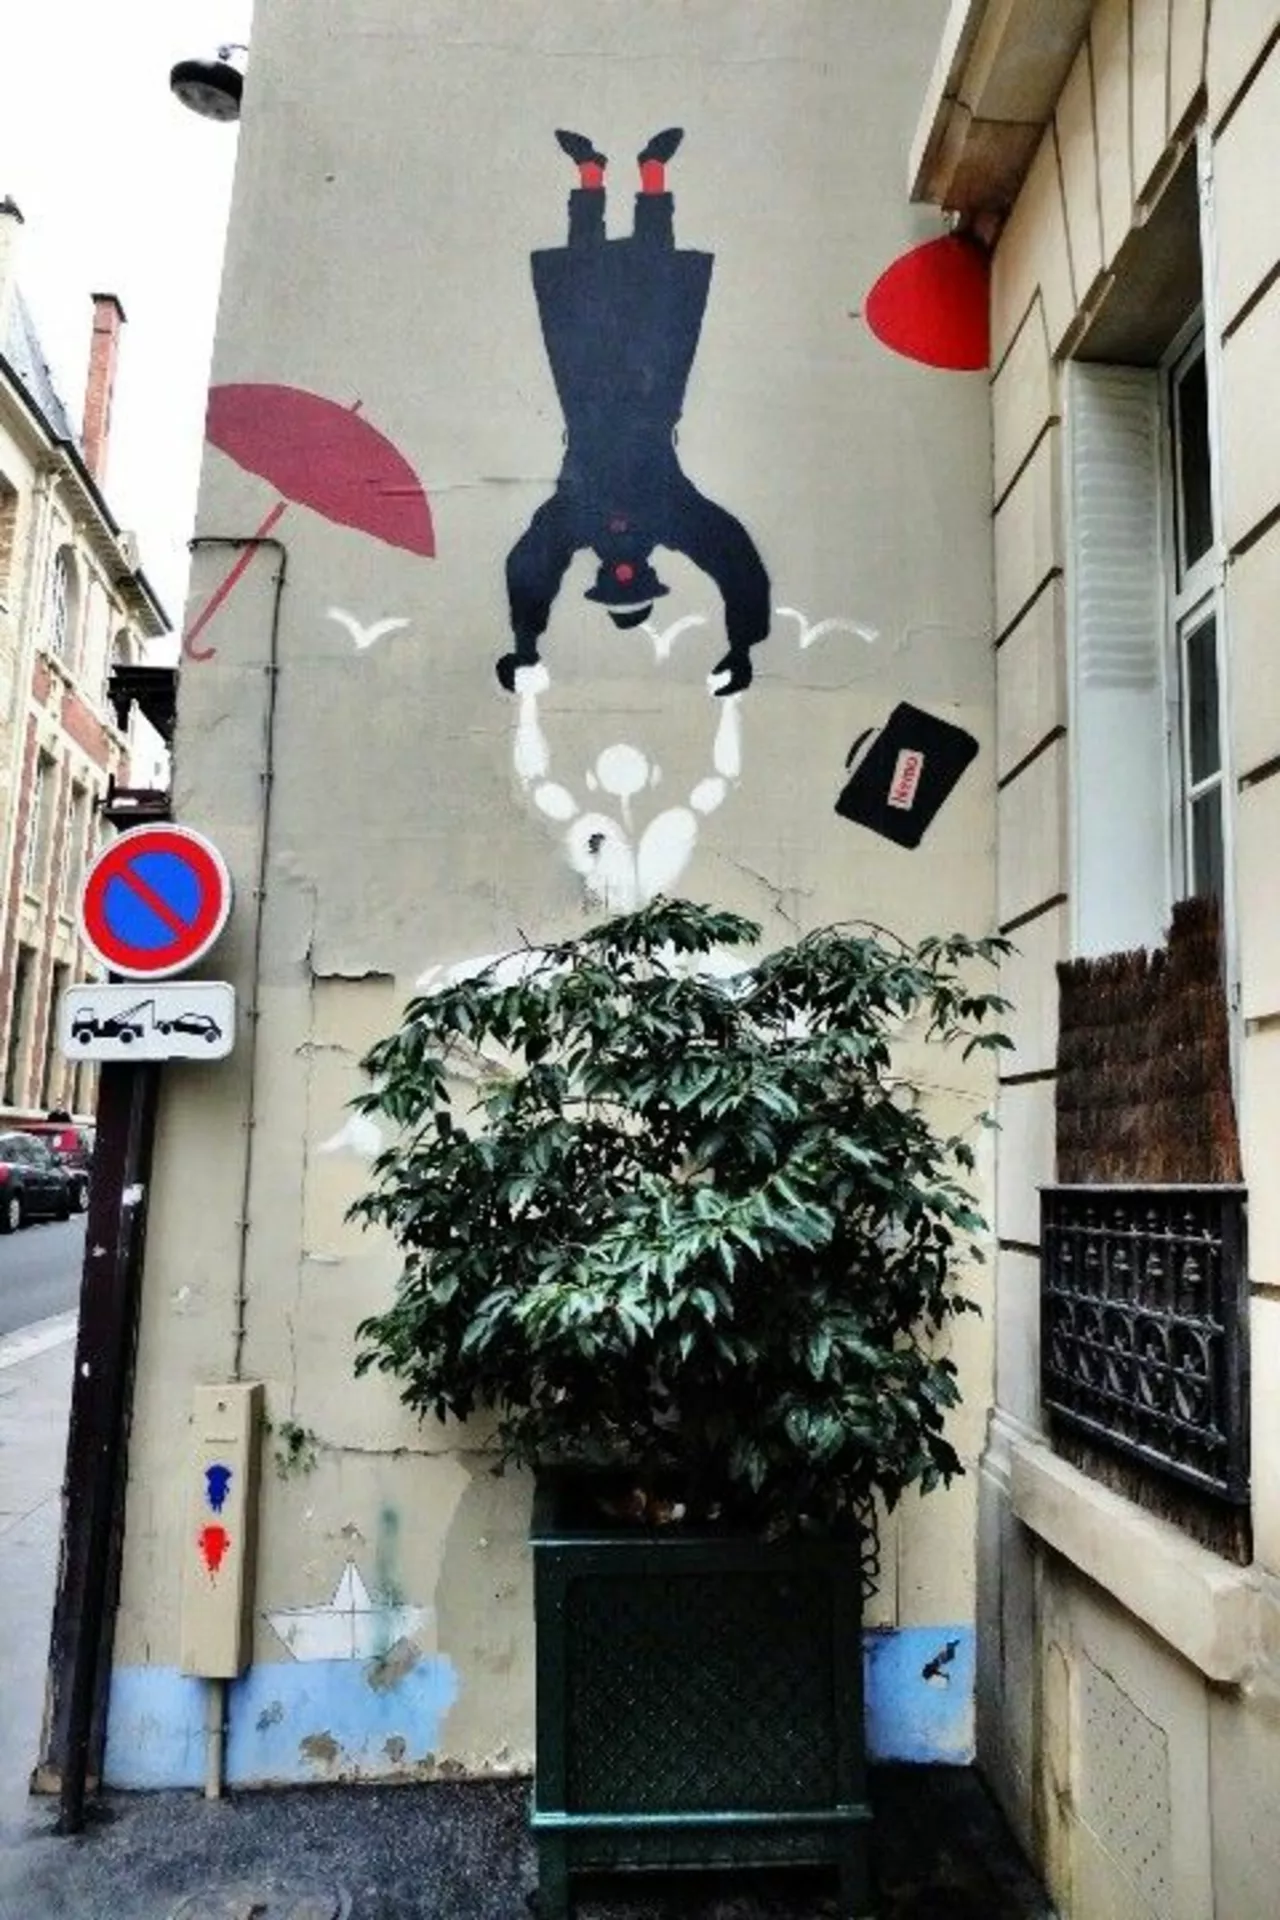 Oeuvre de Street Art réalisée par Nemo à Paris